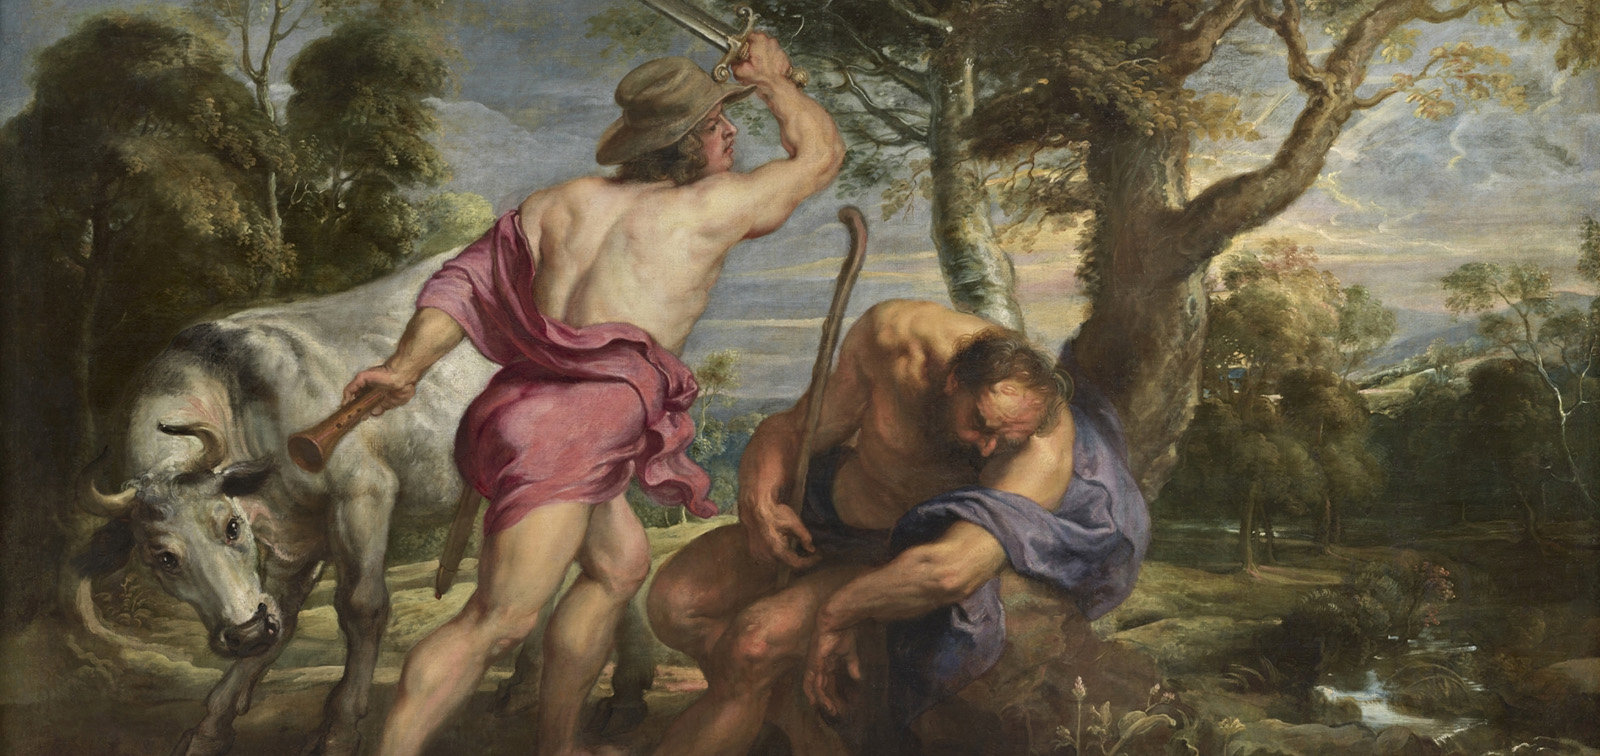 Pedro Pablo Rubens y taller. Mercurio y Argos, 1636 - 1638, Madrid.